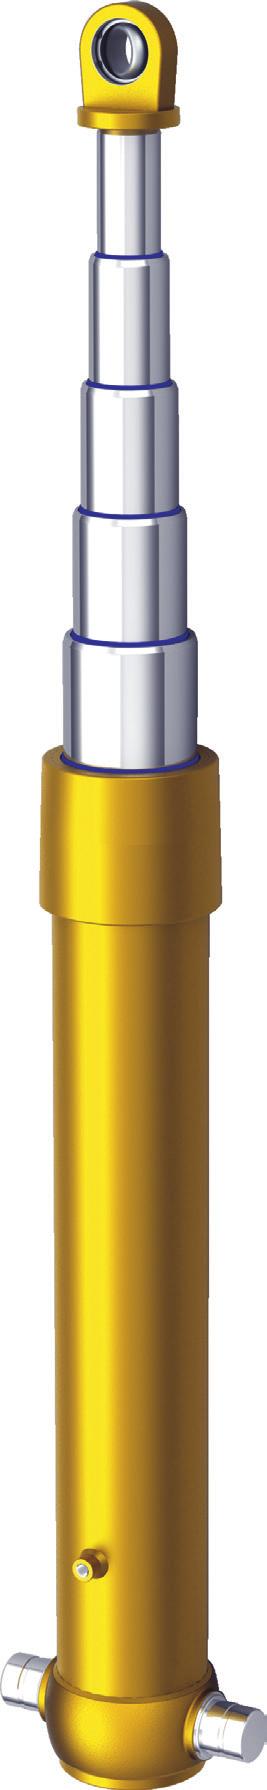 DEK.03 Önden Kaldırmalı Teleskopik Silindirler Front Type Telescopic Cylinder Bu ürünle birlikte Strok Kontrol Valfi (DEK.11.22.01) kullanılmazsa, ürün garanti kapsamı dışındadır.